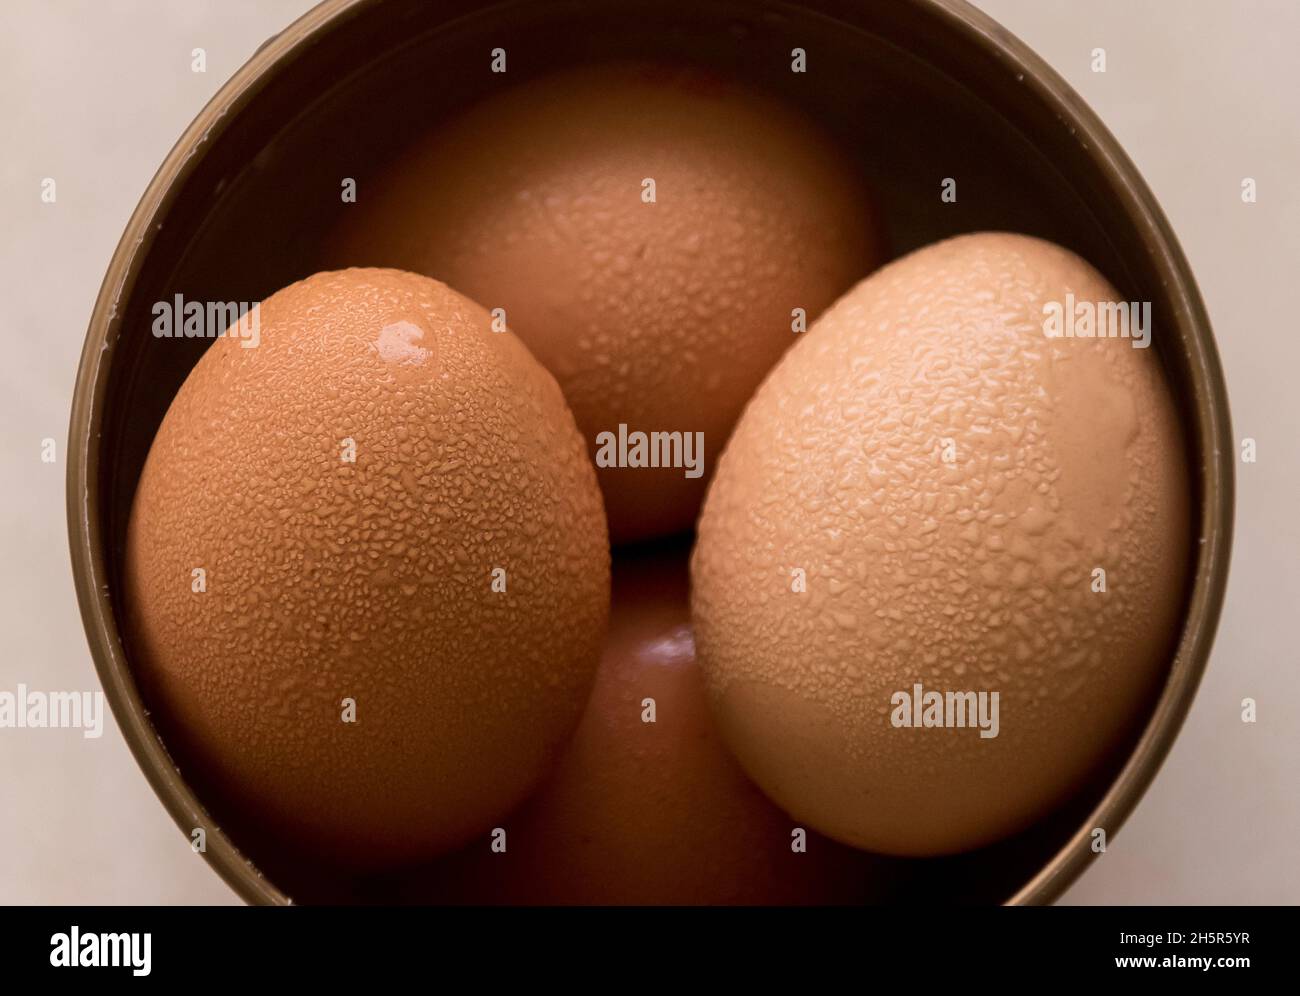 Quattro uova di gallina marroni in un recipiente rotondo con conchiglie ricoperte di condensa. Preso dal frigorifero a scaldare a temperatura ambiente in atmosfera calda e umida. Foto Stock